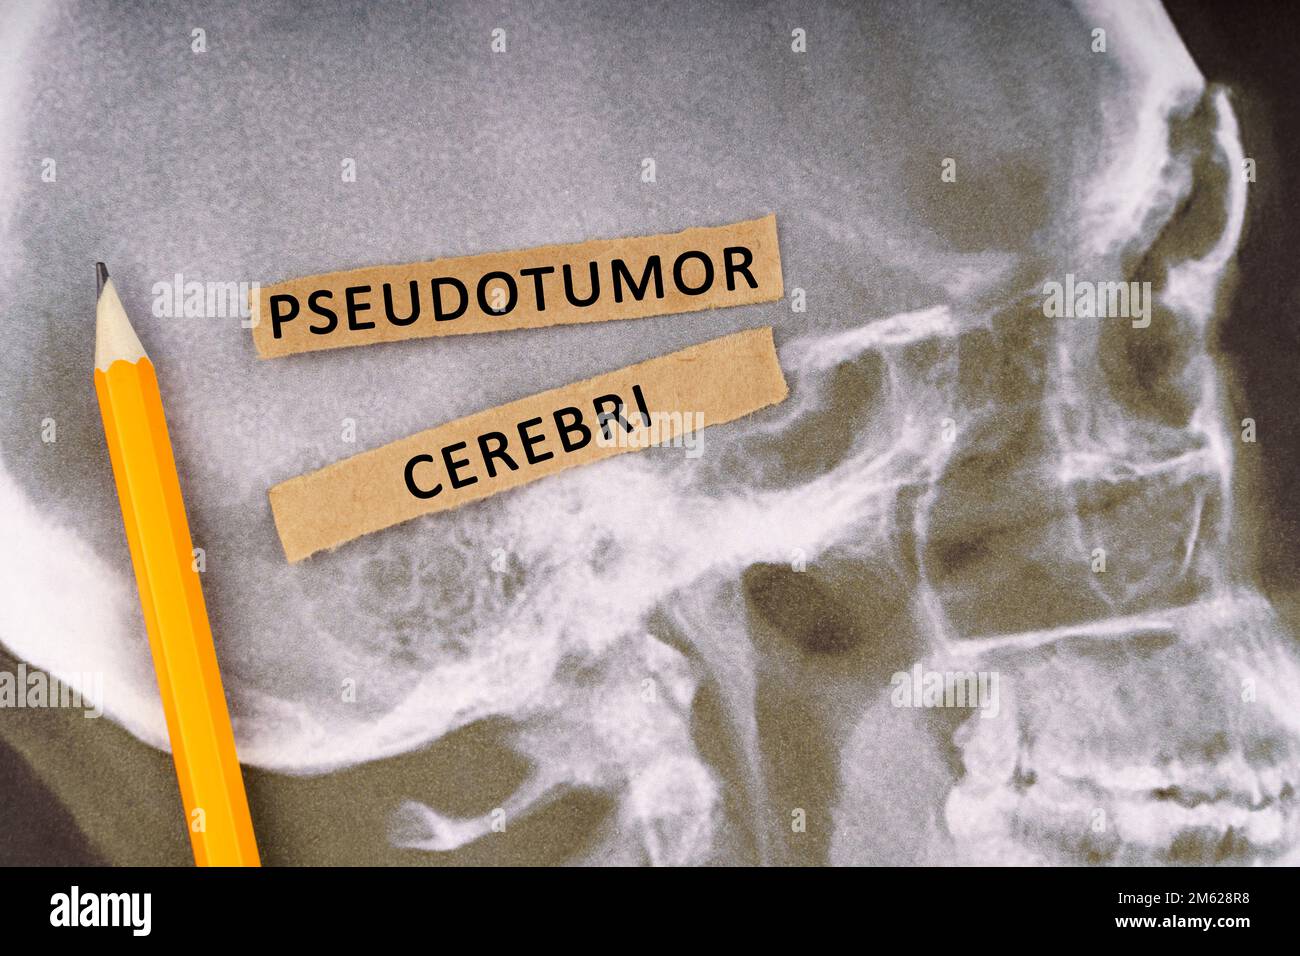 Medizinisches Konzept. Uber Röntgenbilder eines menschlichen Schädels, Bleistift und Papierstreifen mit der Inschrift - Pseudotumor cerebri Stockfoto